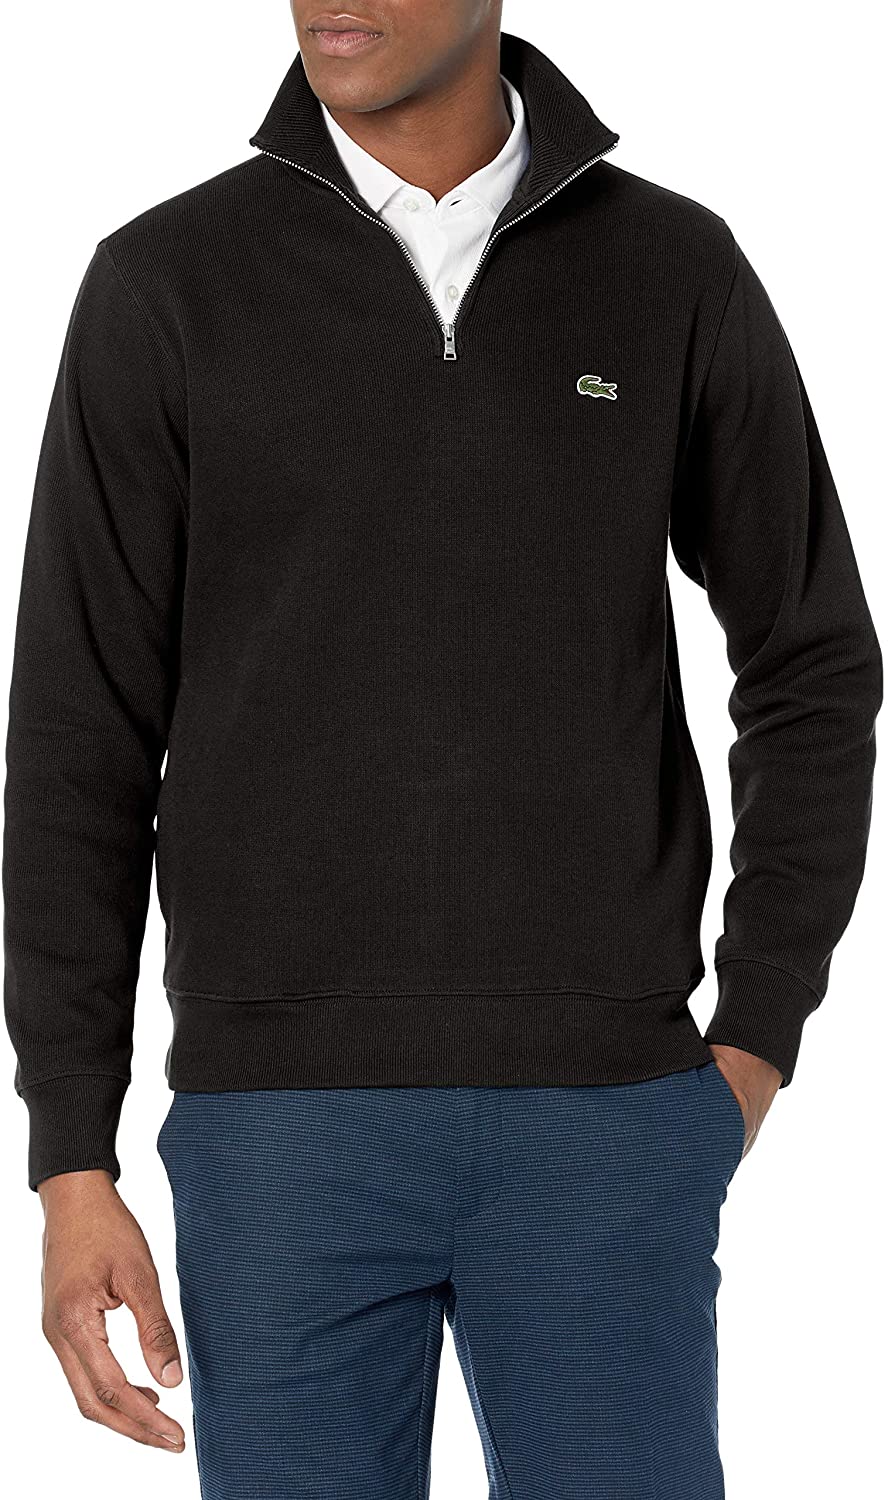 Men&#039;s Long Sleeve Quarter Zip Cotton Sweatshirt | eBay